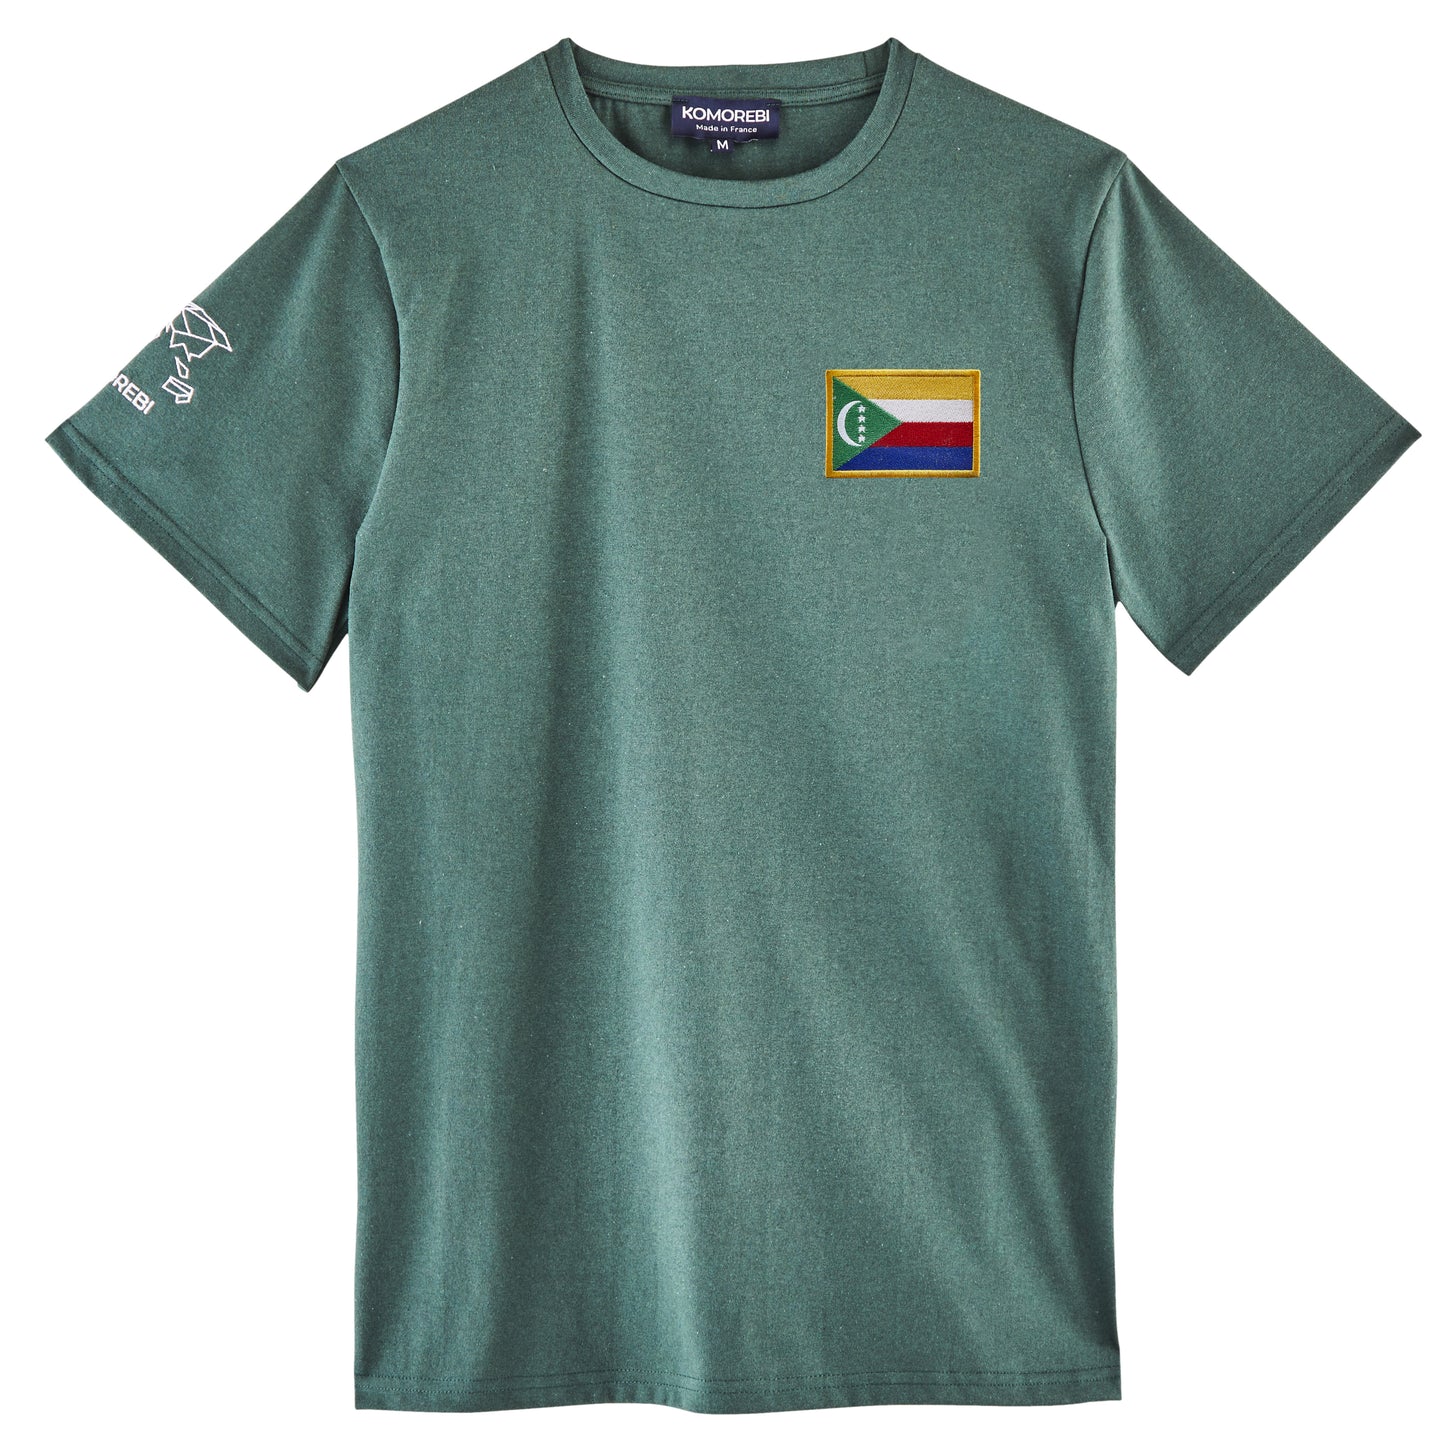 Comoros • T-shirt